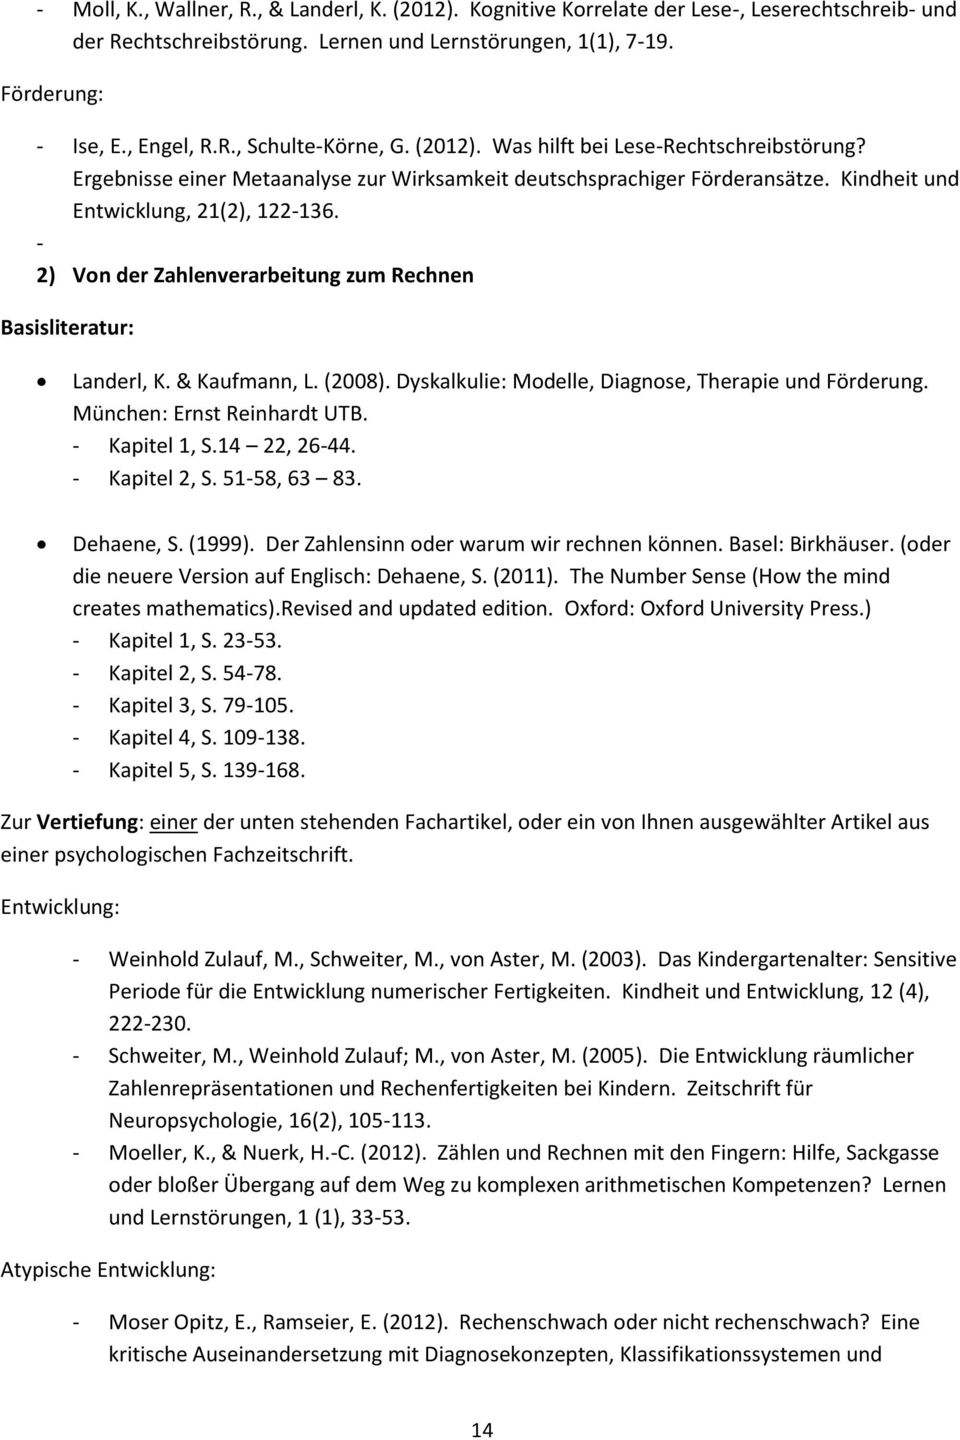 - 2) Von der Zahlenverarbeitung zum Rechnen Basisliteratur: Landerl, K. & Kaufmann, L. (2008). Dyskalkulie: Modelle, Diagnose, Therapie und Förderung. München: Ernst Reinhardt UTB. - Kapitel 1, S.